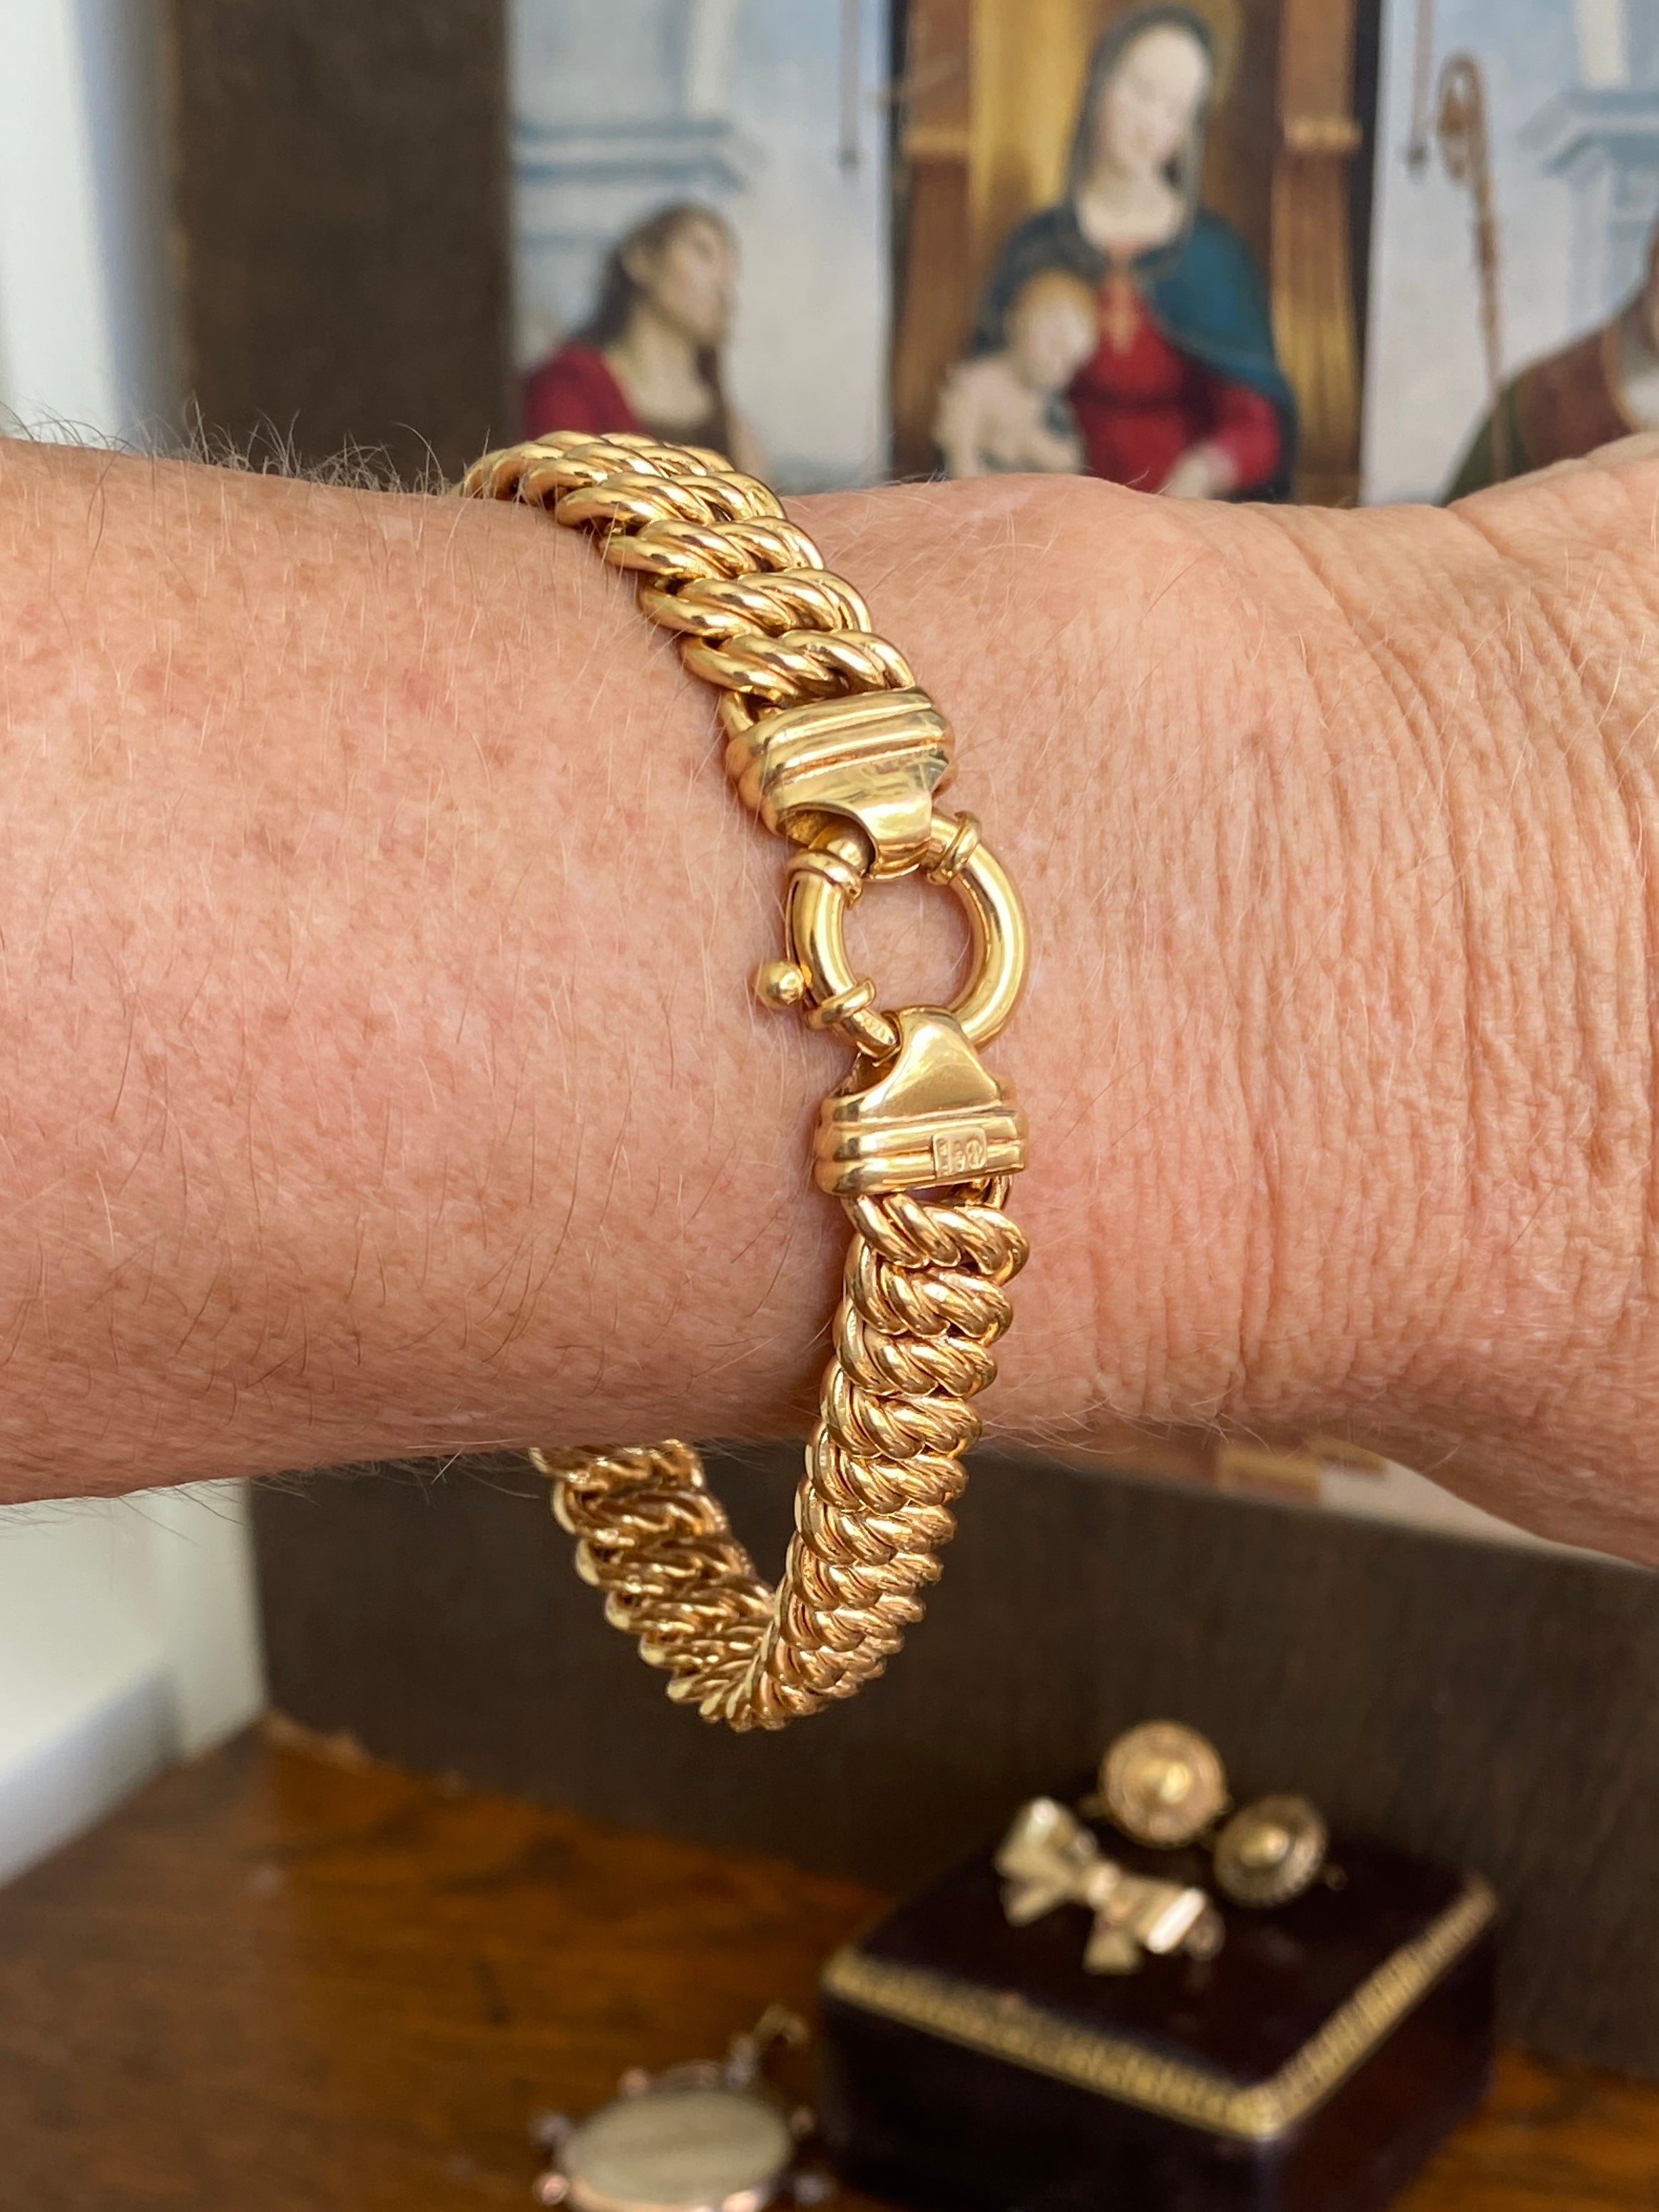 Vintage Gold Bracelet with bolt ring clasp